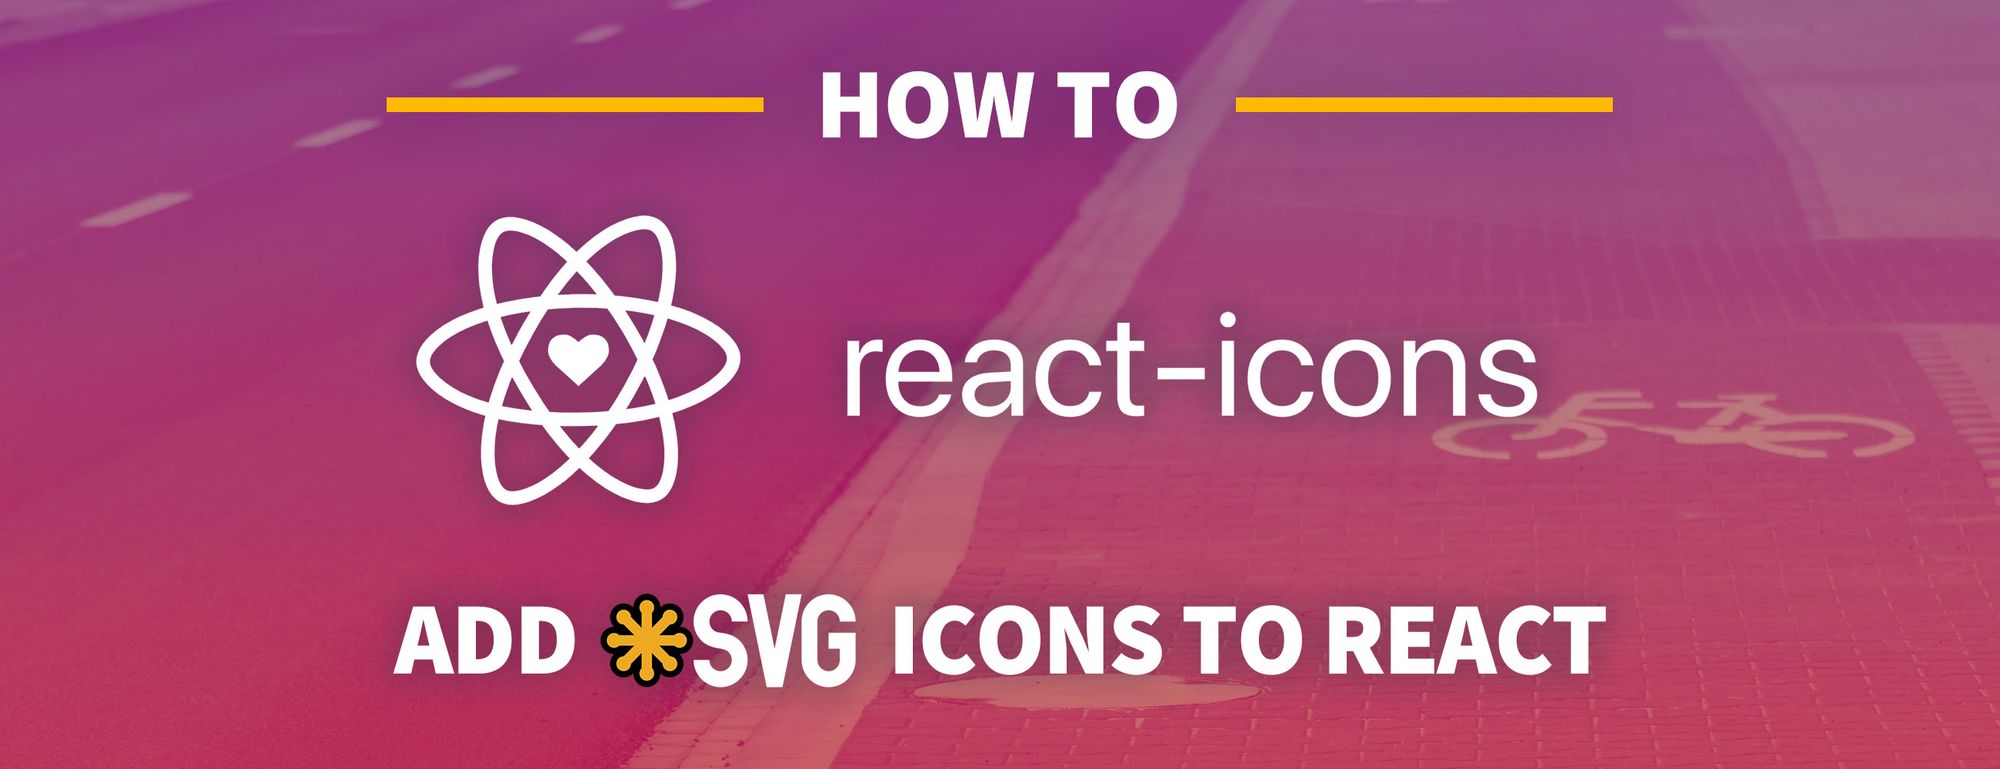 Sử dụng biểu tượng SVG trong React với React Icons và Font Awesome:
Sử dụng biểu tượng SVG trong React sẽ giúp cho giao diện trang web của bạn trở nên đẹp mắt và chuyên nghiệp hơn, đồng thời cải thiện trải nghiệm người dùng. Với các công cụ như React Icons và Font Awesome, việc sử dụng biểu tượng SVG trong React sẽ trở nên đơn giản và tiện lợi hơn bao giờ hết. Hãy khám phá các công cụ này để tạo ra một trang web chất lượng và đầy đủ tính năng!